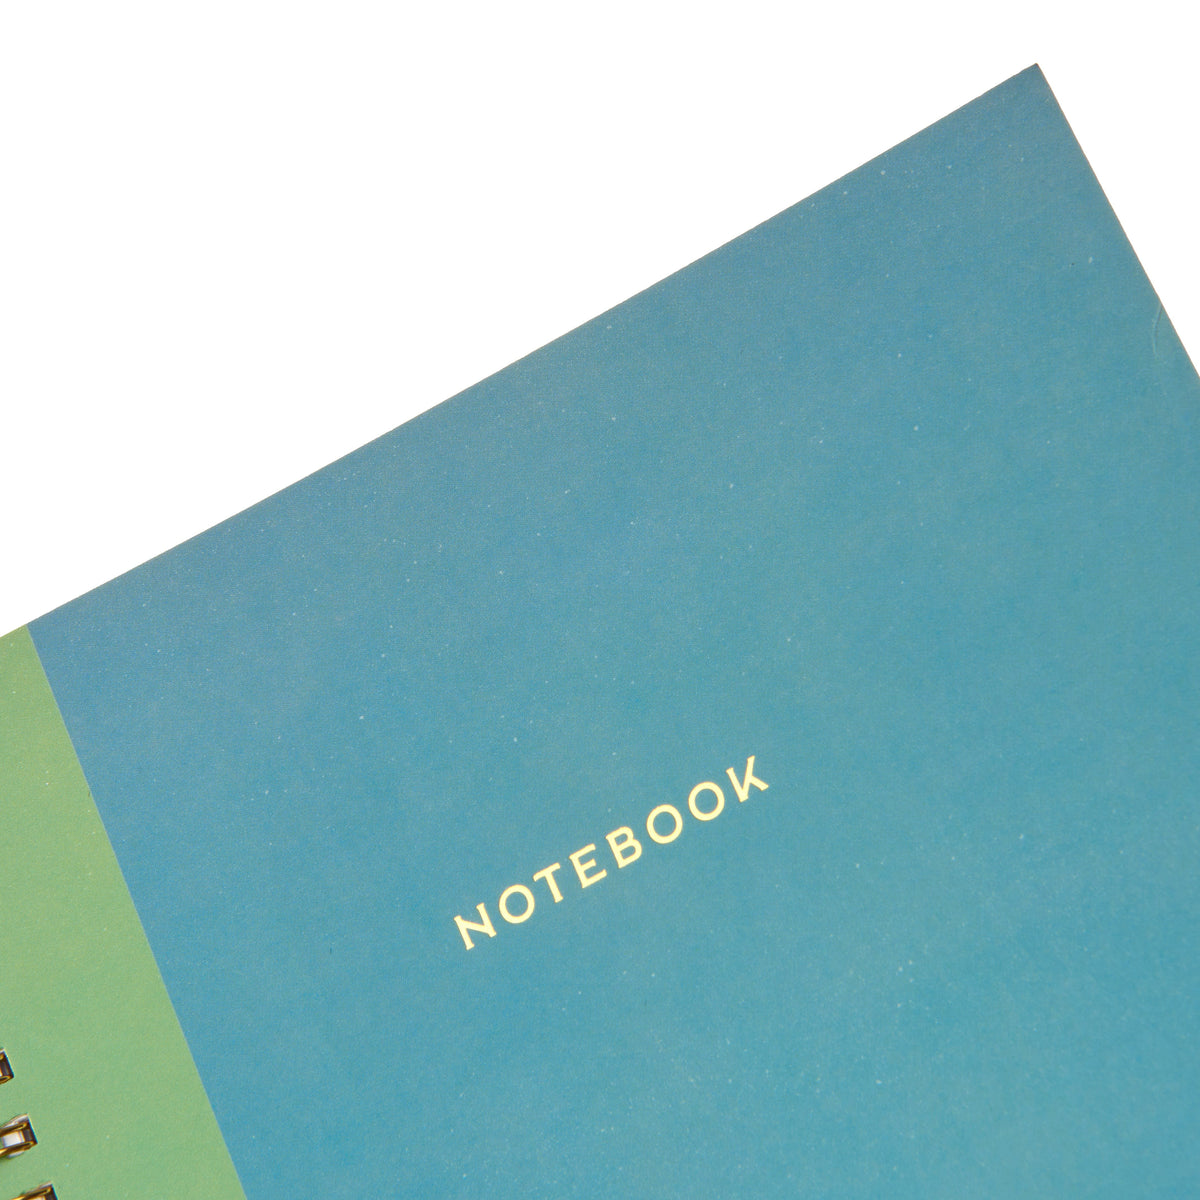 Spiral Teal Notebook Gartner Studios Notebooks 61054